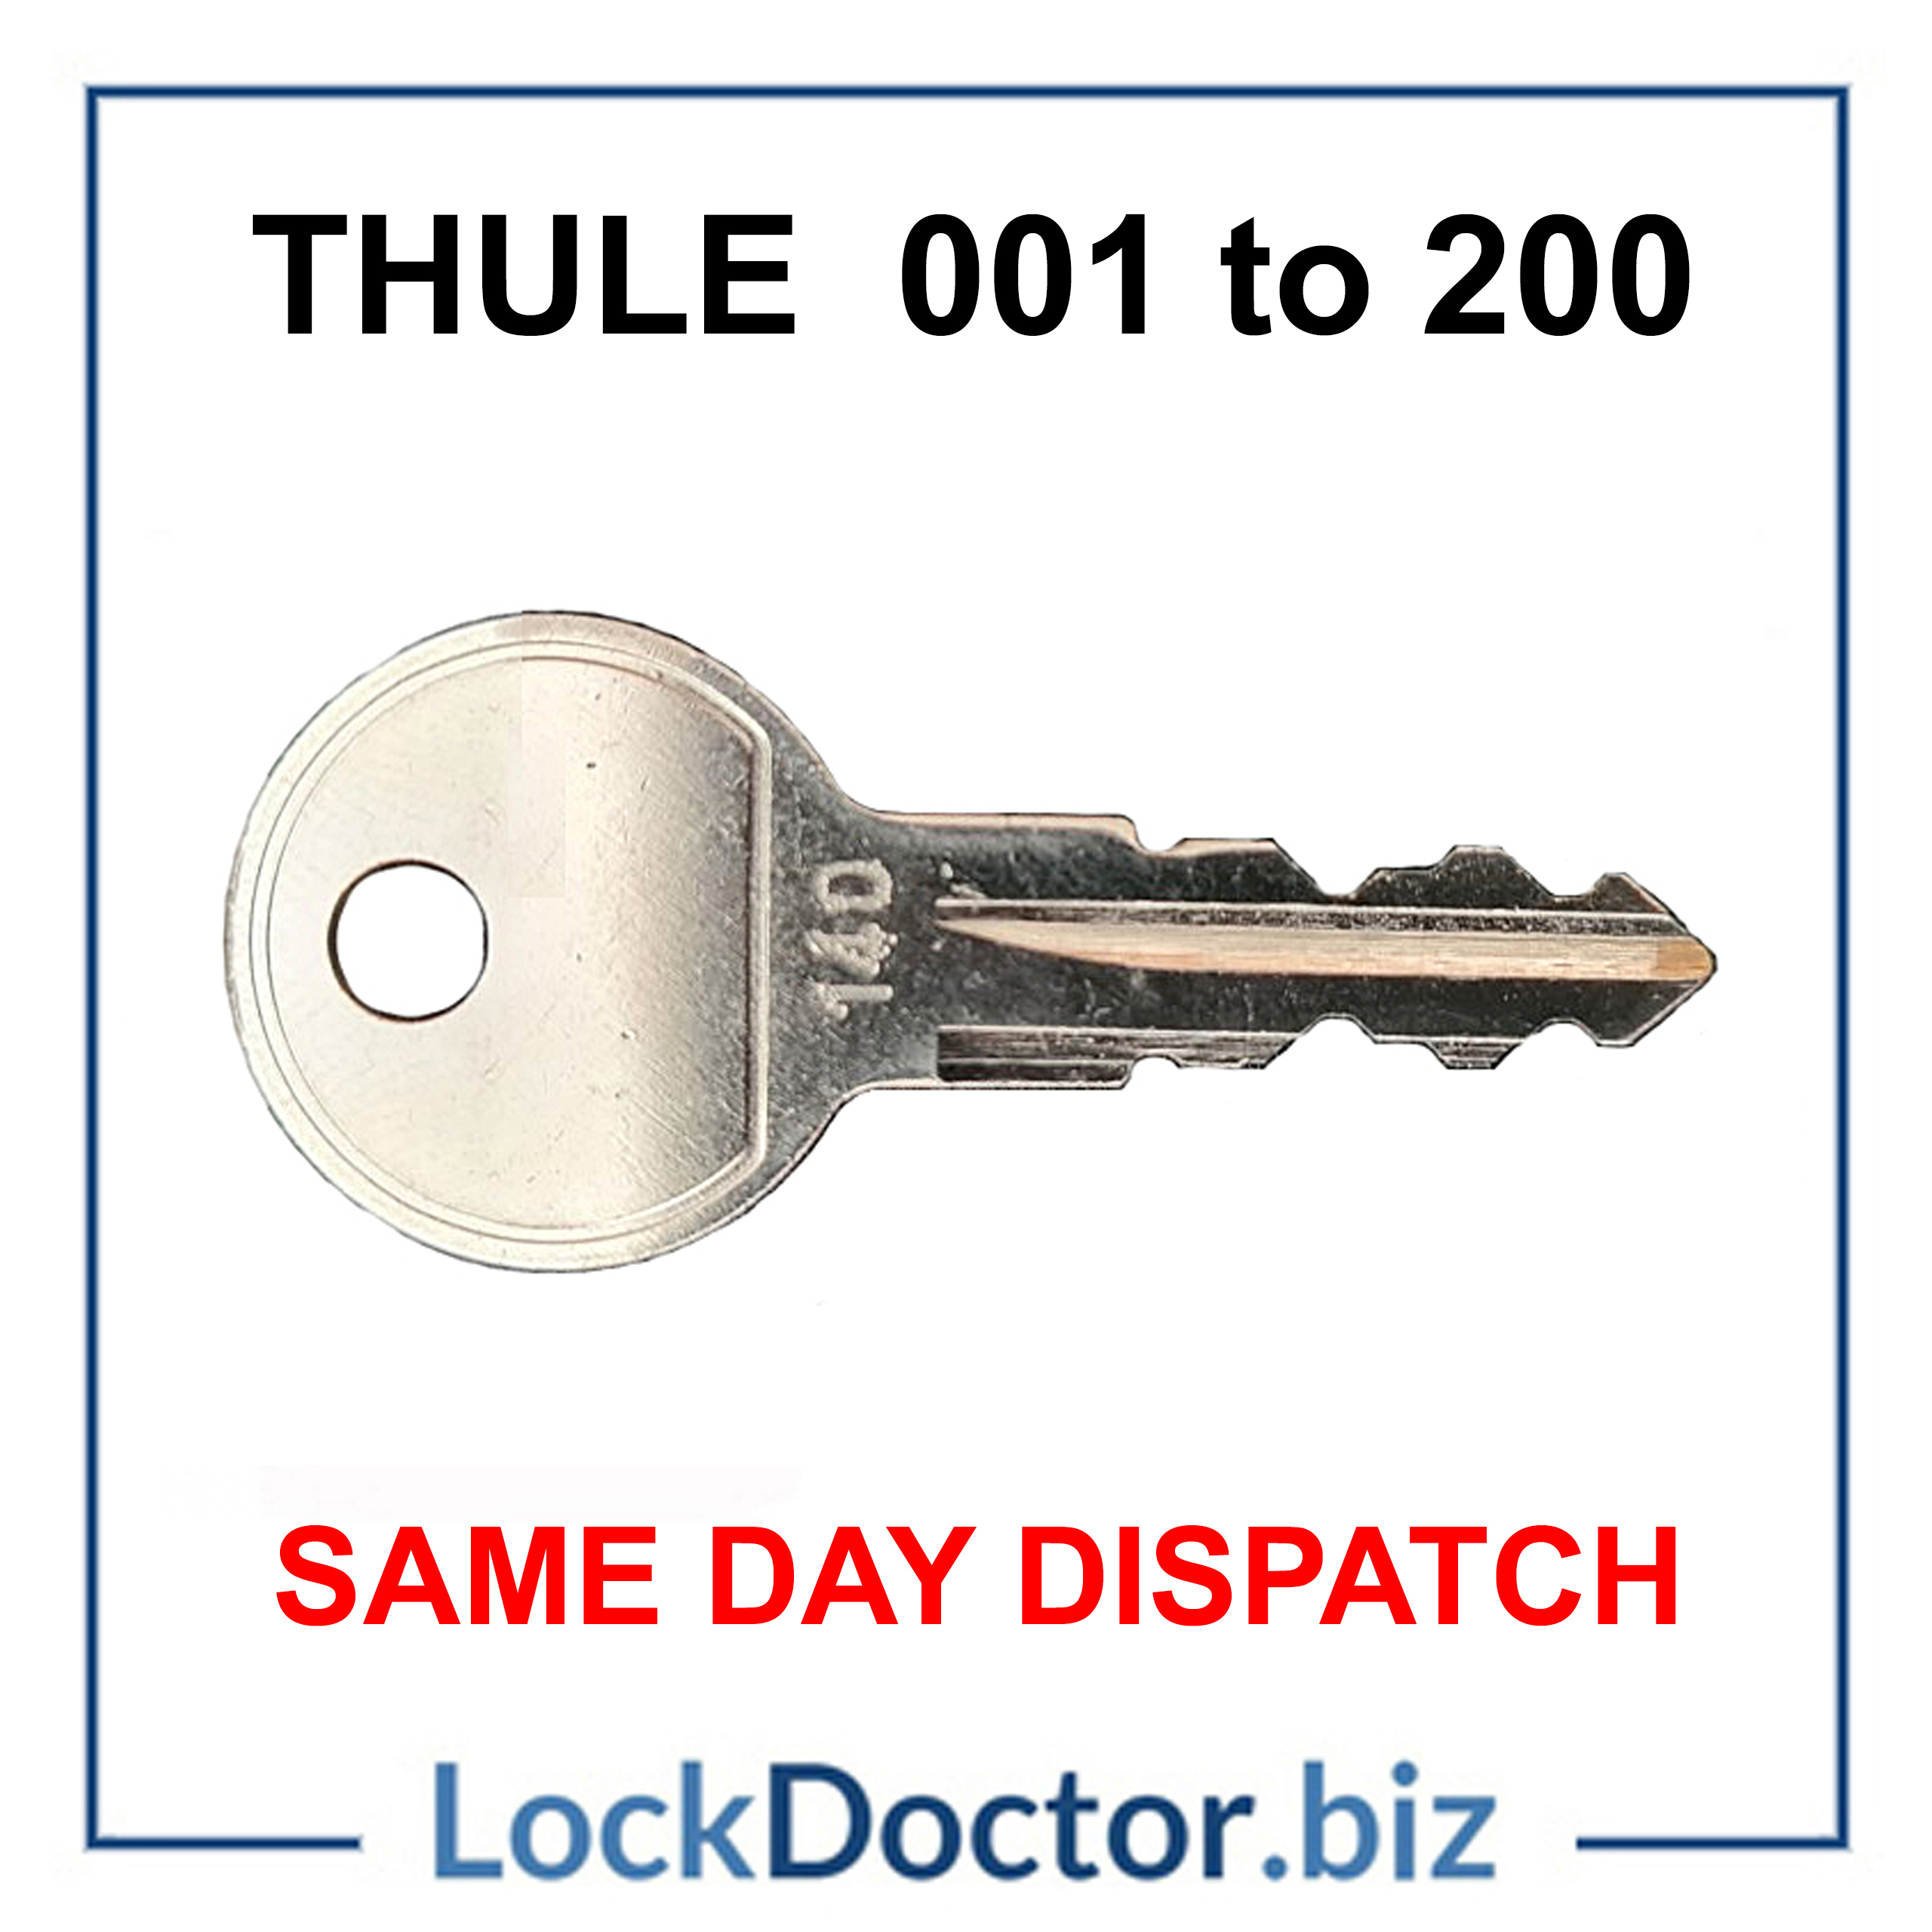 LockDoctor.biz Halfords THULE Roof Rack Key Number 124 